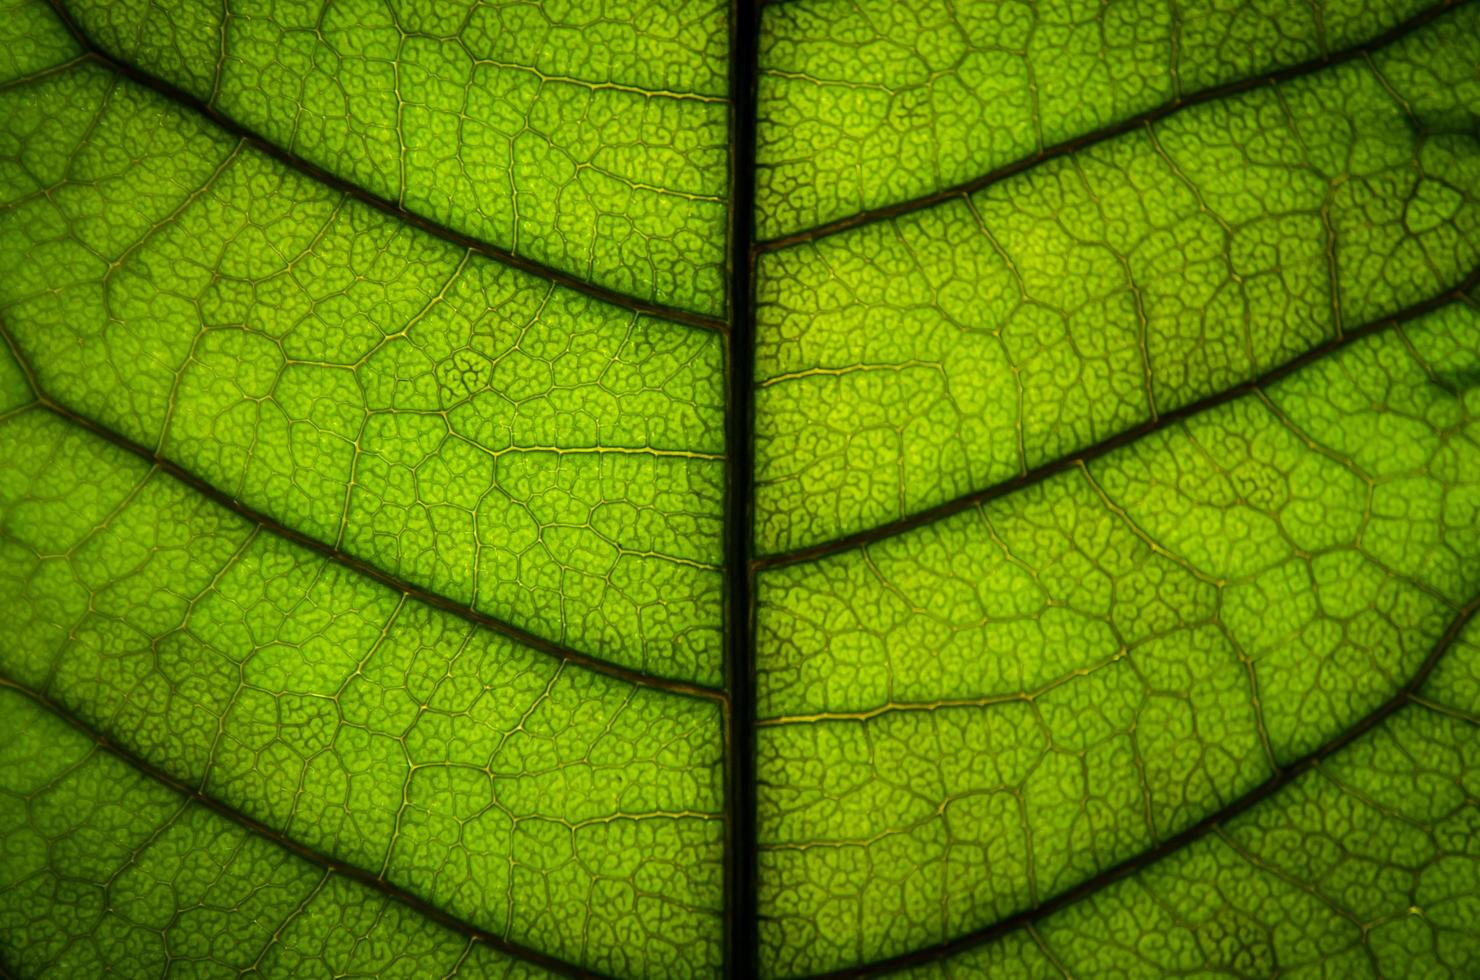 trama di foglie verdi e fibra fogliare, carta da parati per dettaglio di foglia verde foto